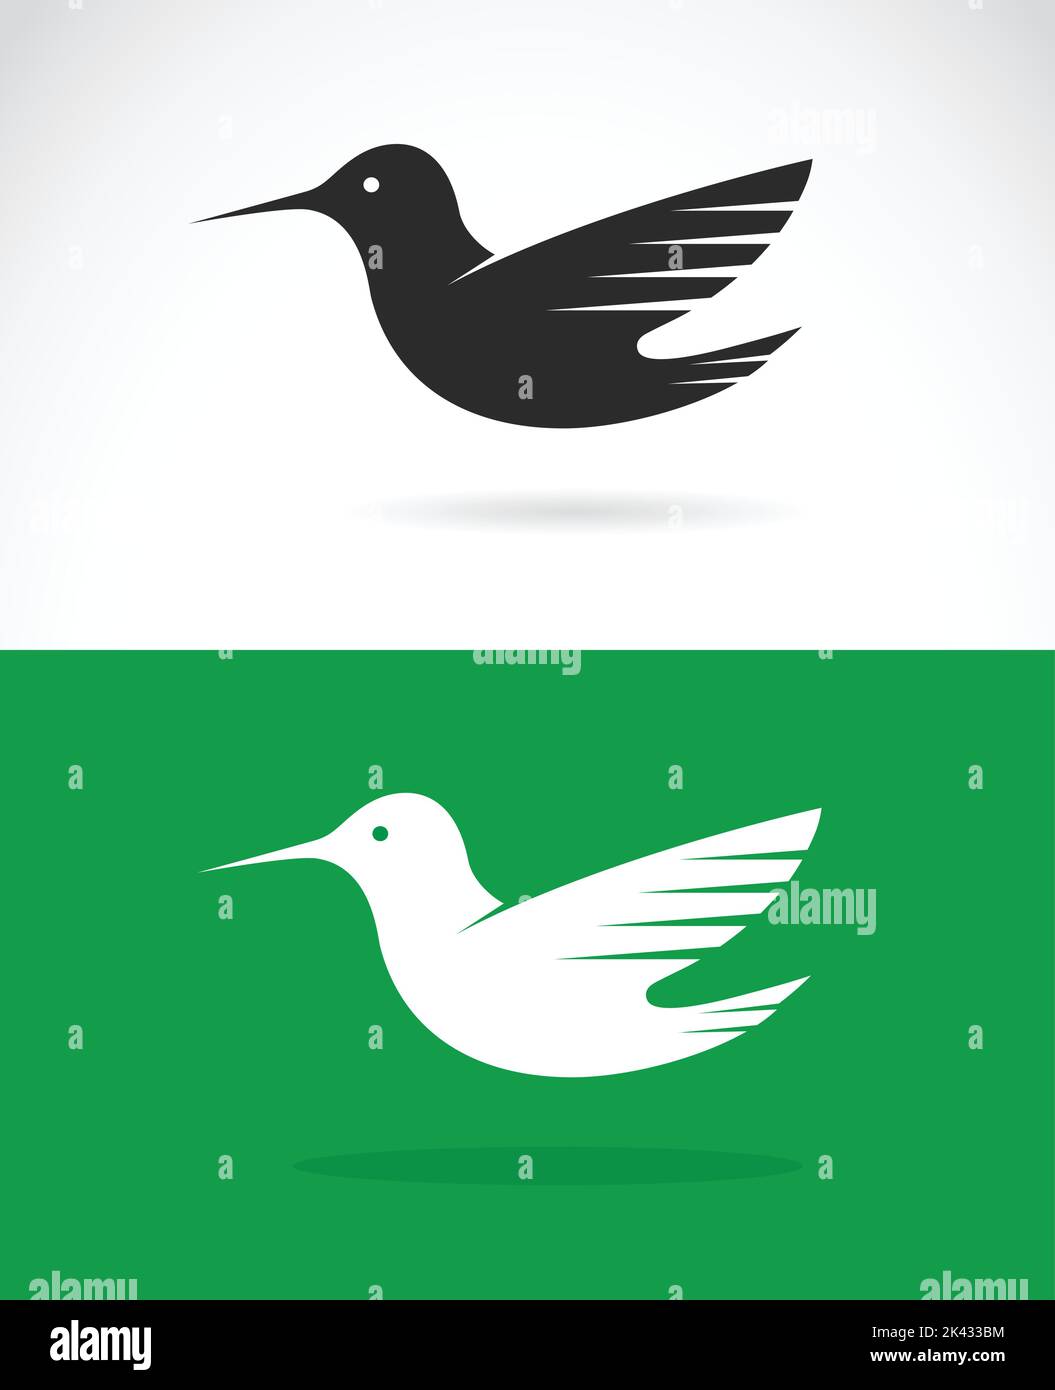 Immagine vettoriale di un disegno di colibrì su sfondo verde e bianco. Illustrazione vettoriale a strati facilmente modificabile. Animali selvatici. Illustrazione Vettoriale